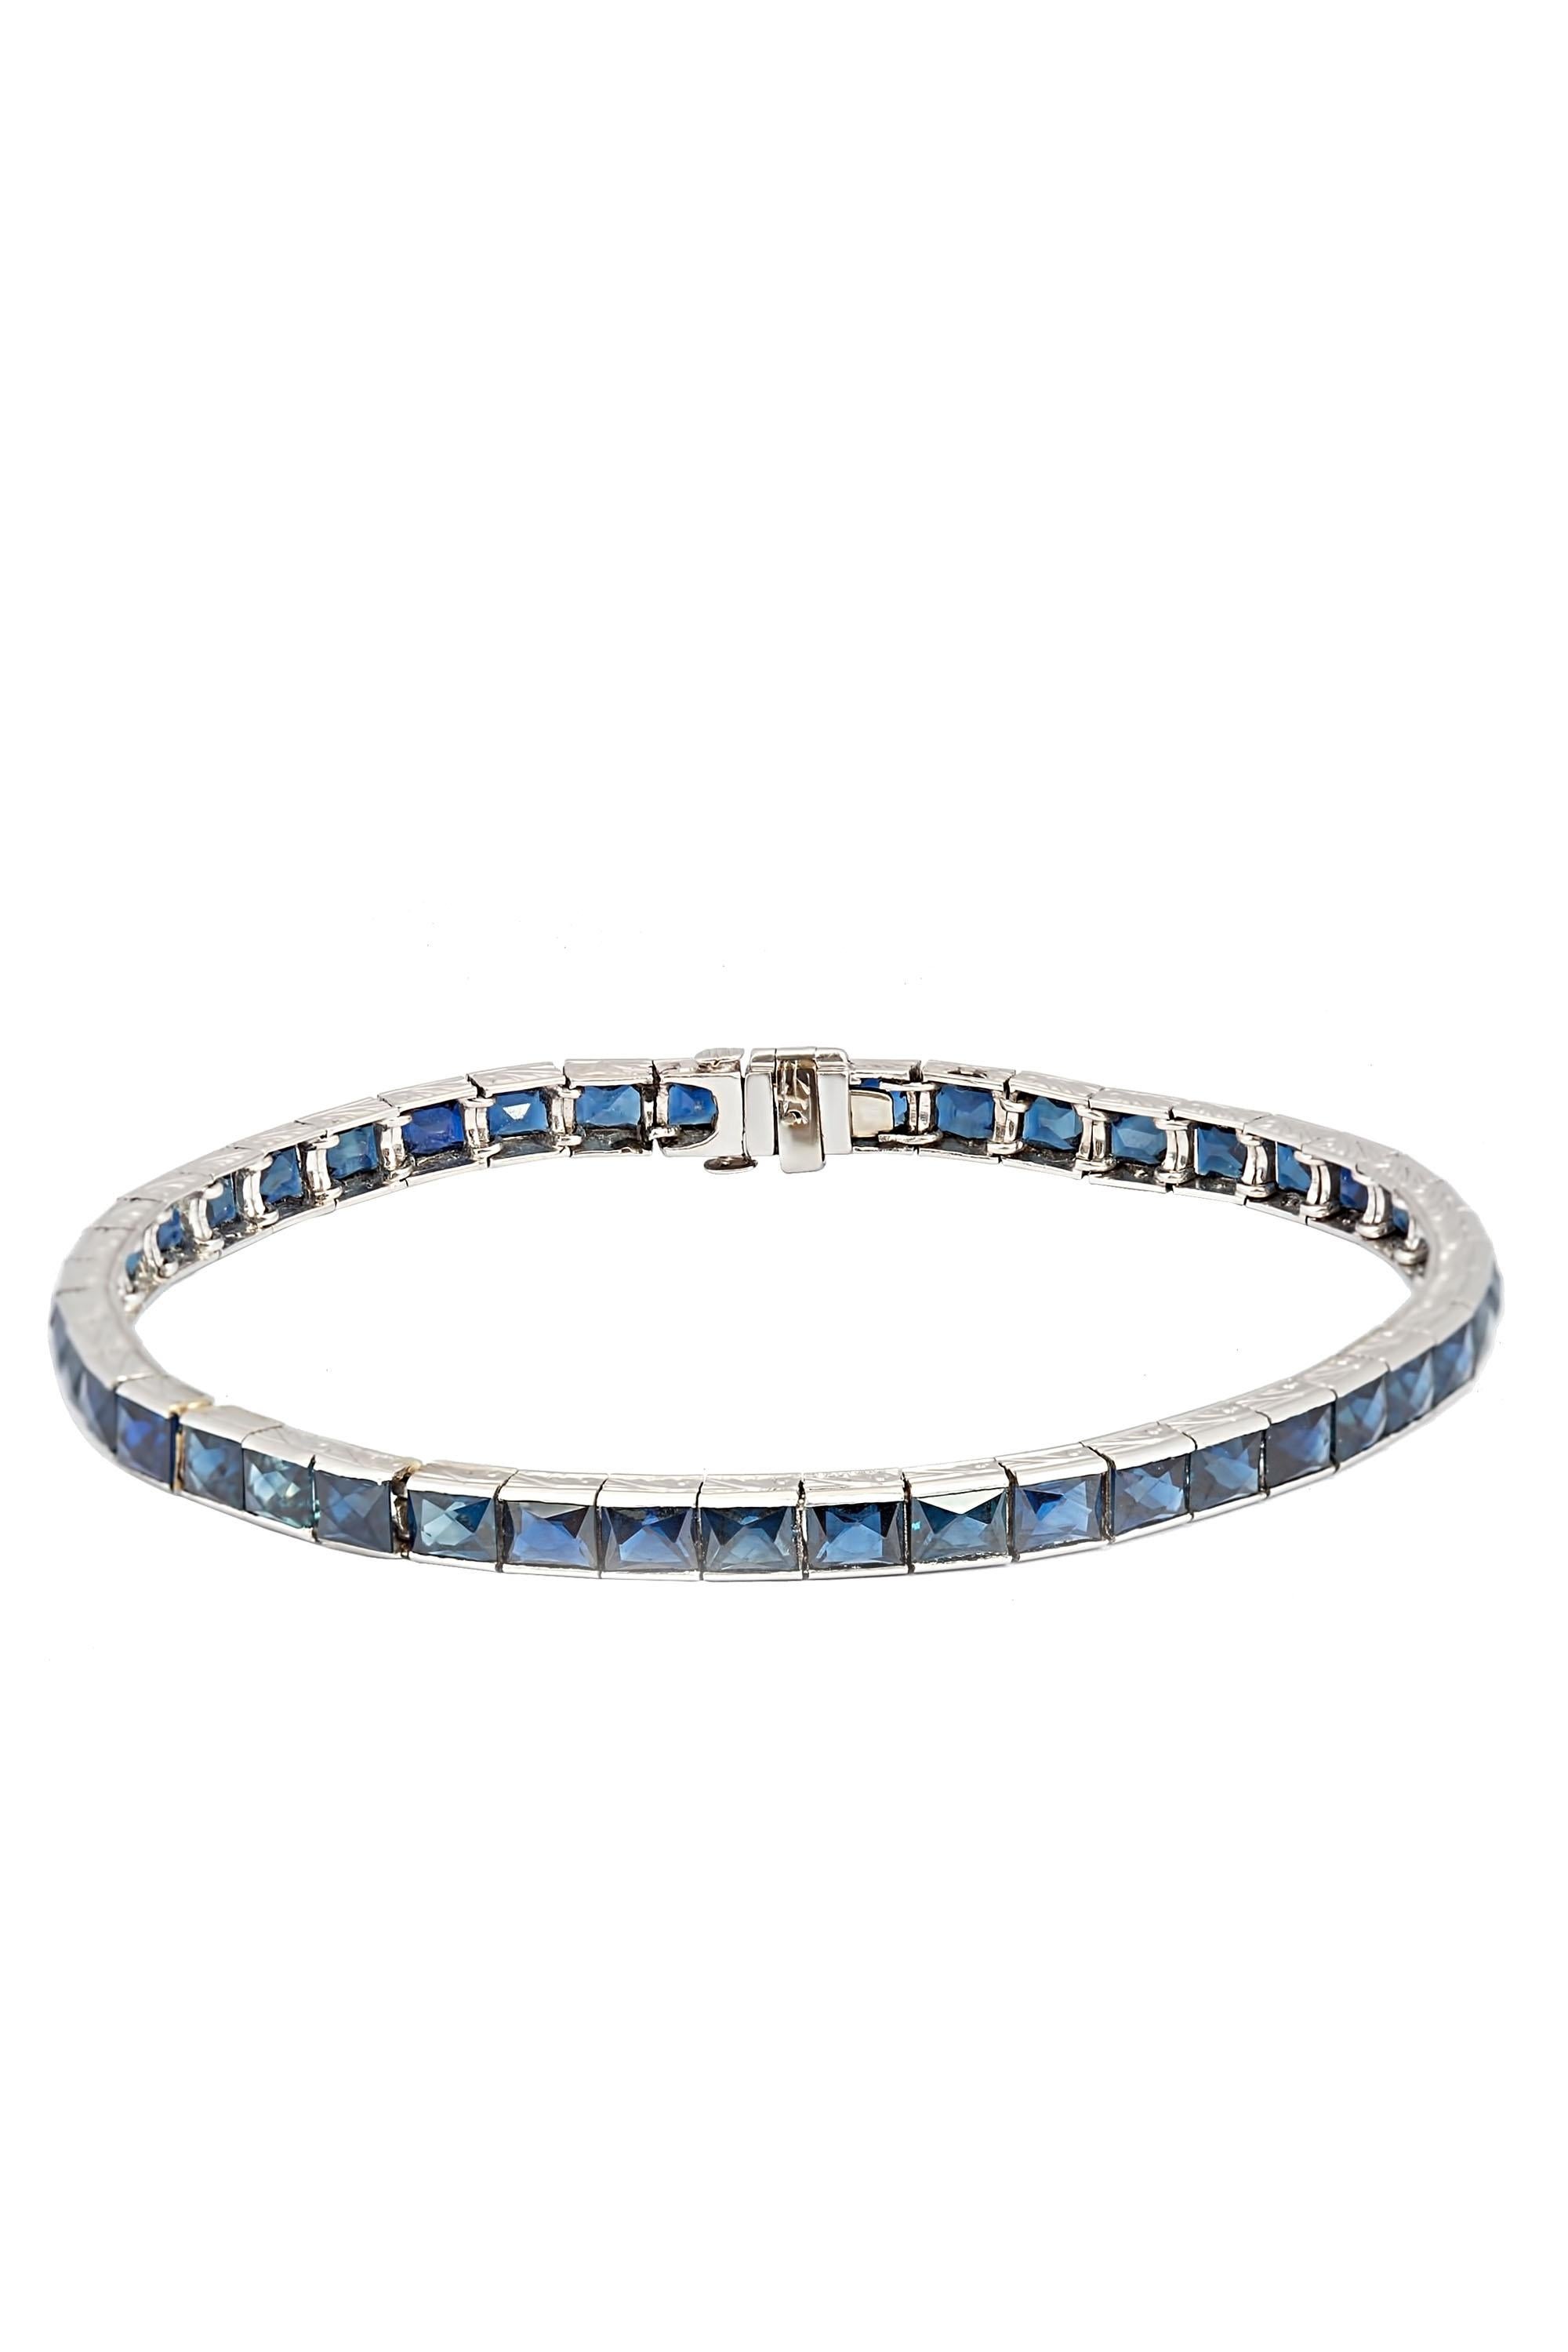 French Cut Art Deco 14.50 Carat Sapphire Line Bracelet For Sale